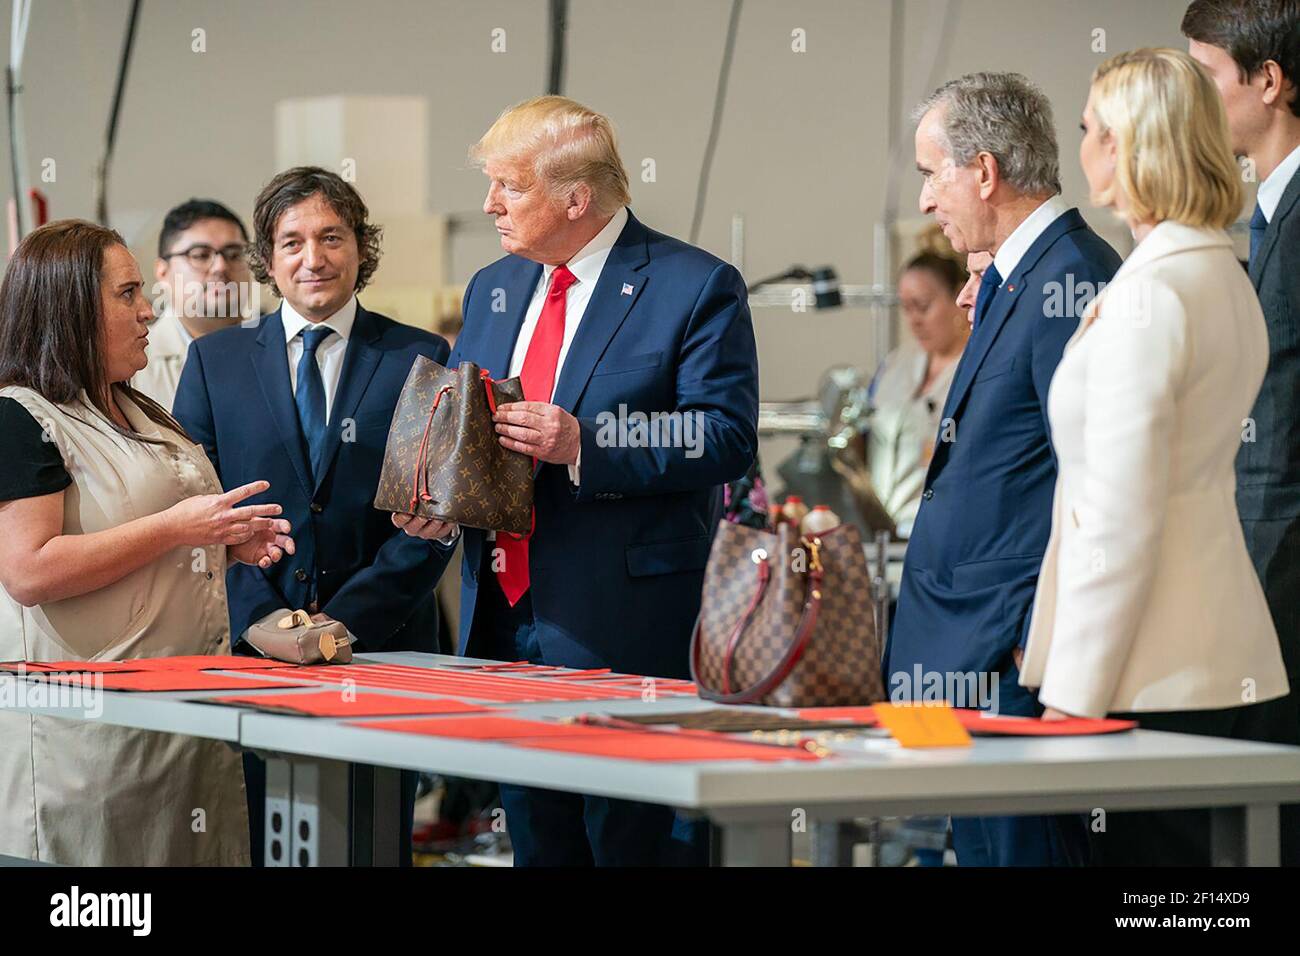 Donald Trump Met With LVMH CEO Bernard Arnault to Discuss U.S.